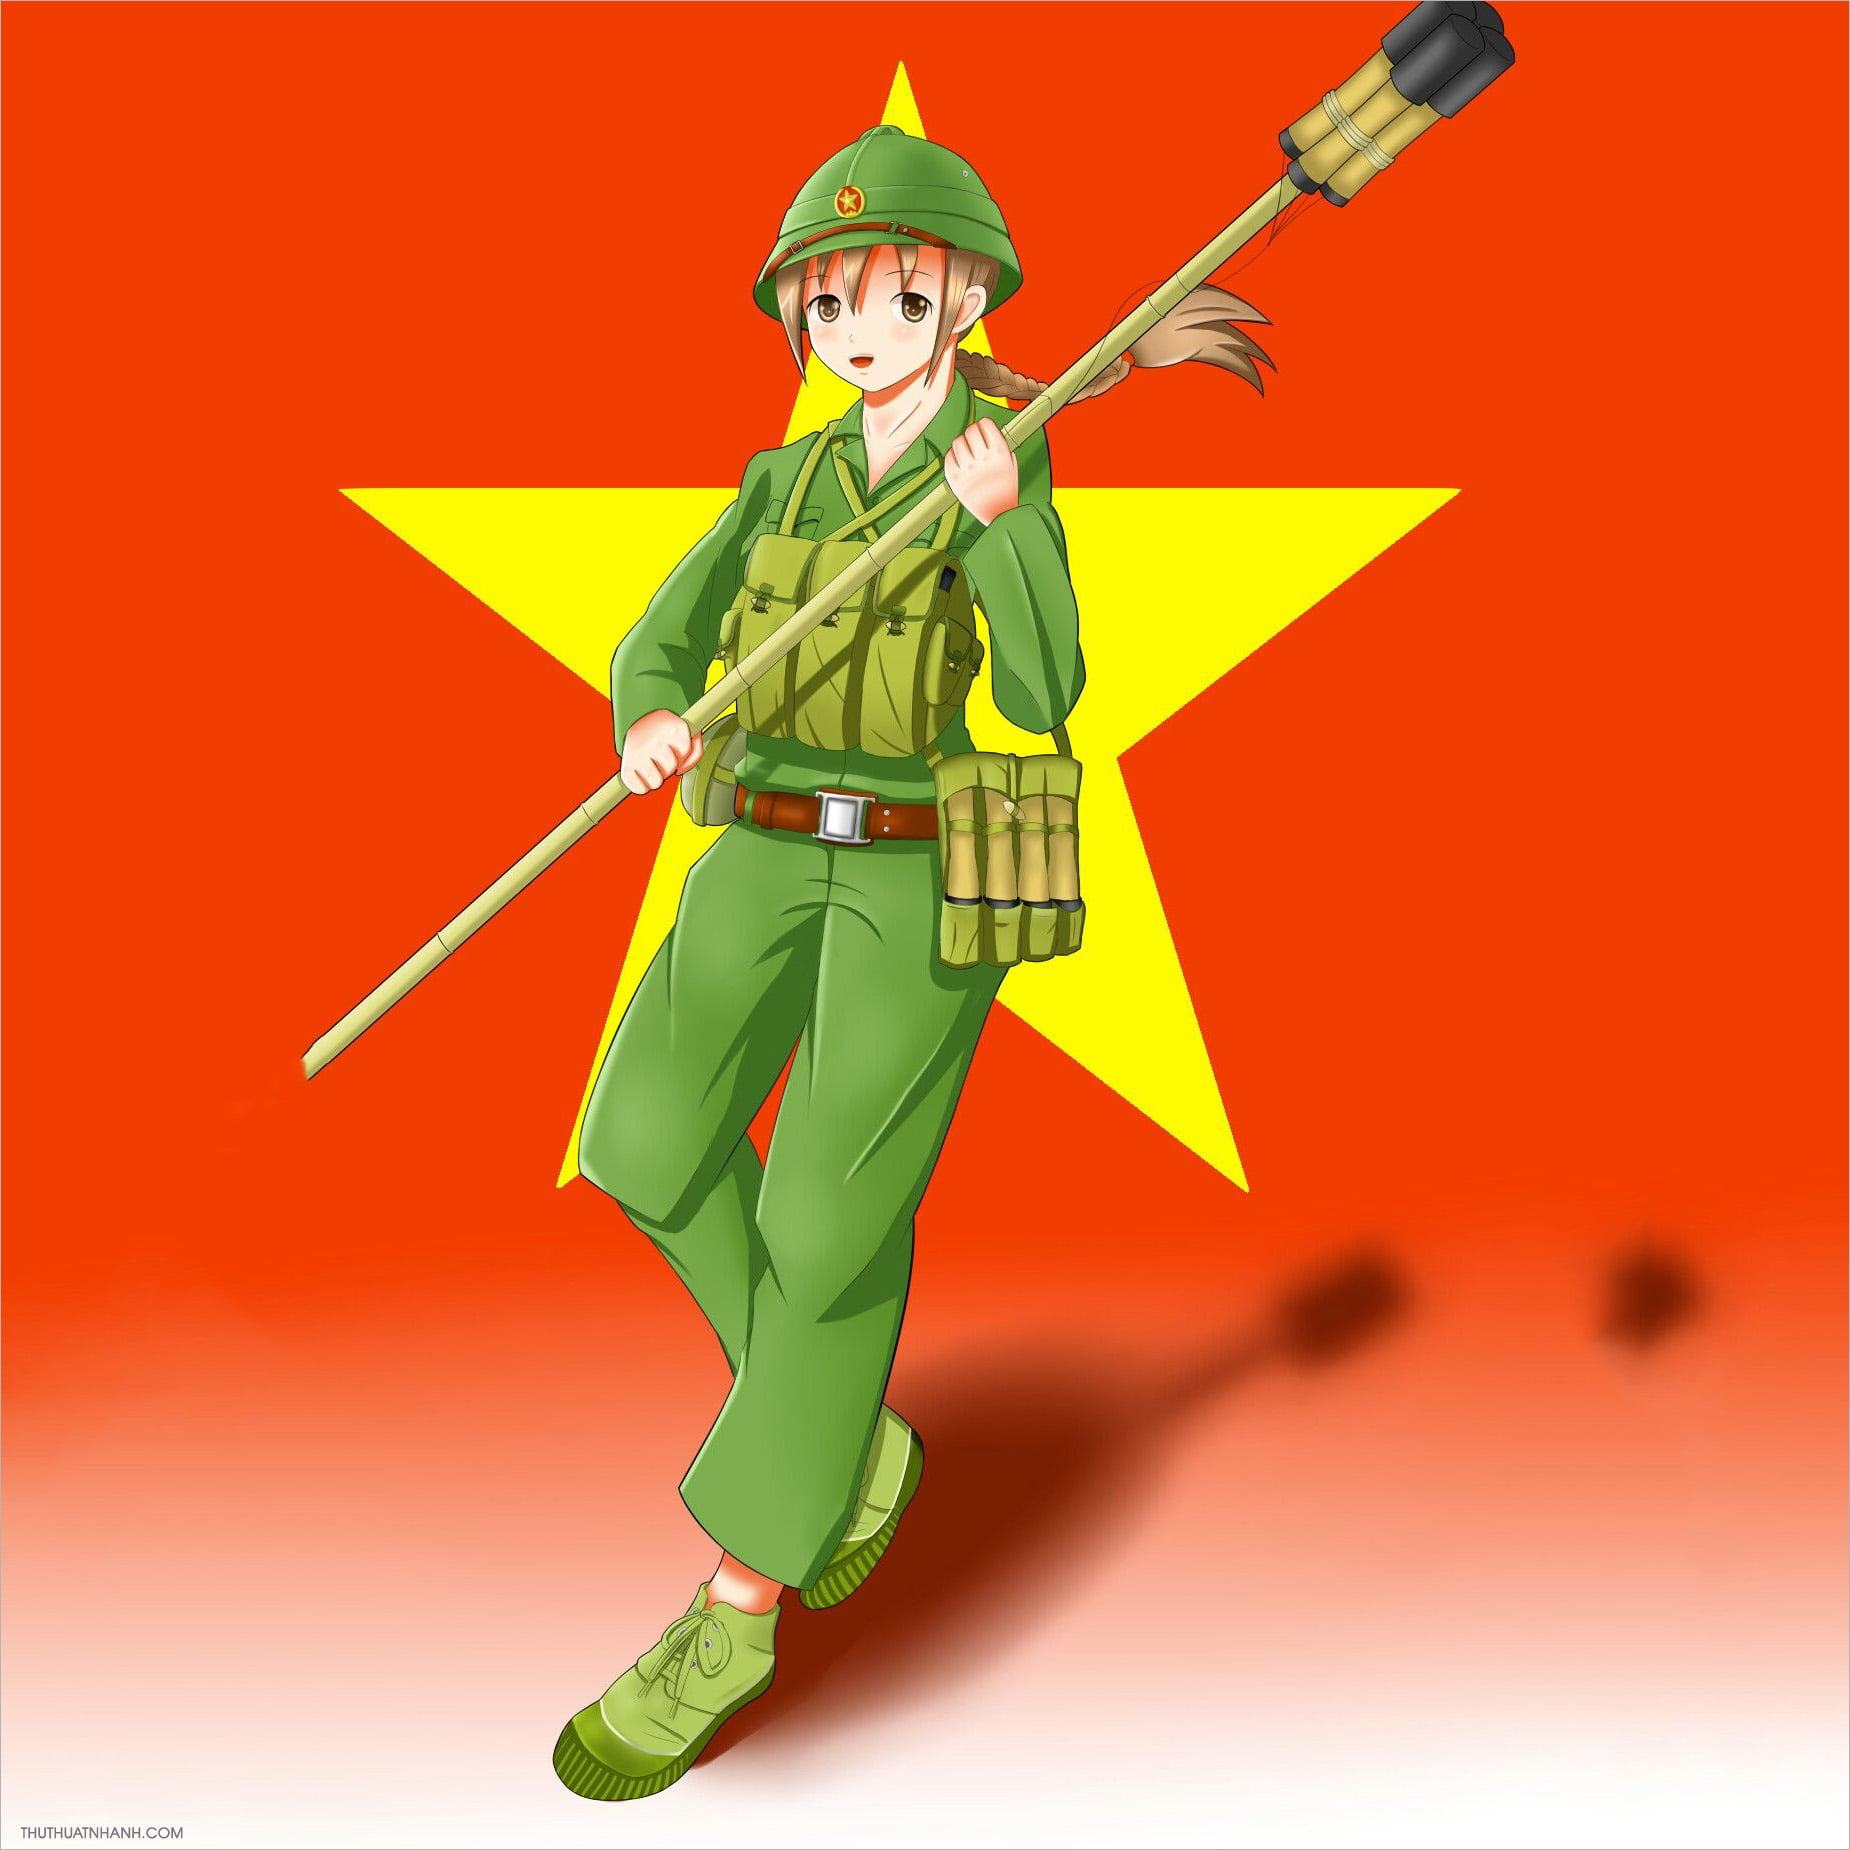 Hình nền cờ Việt Nam Quốc kỳ 4K đẹp cho điện thoại máy tính